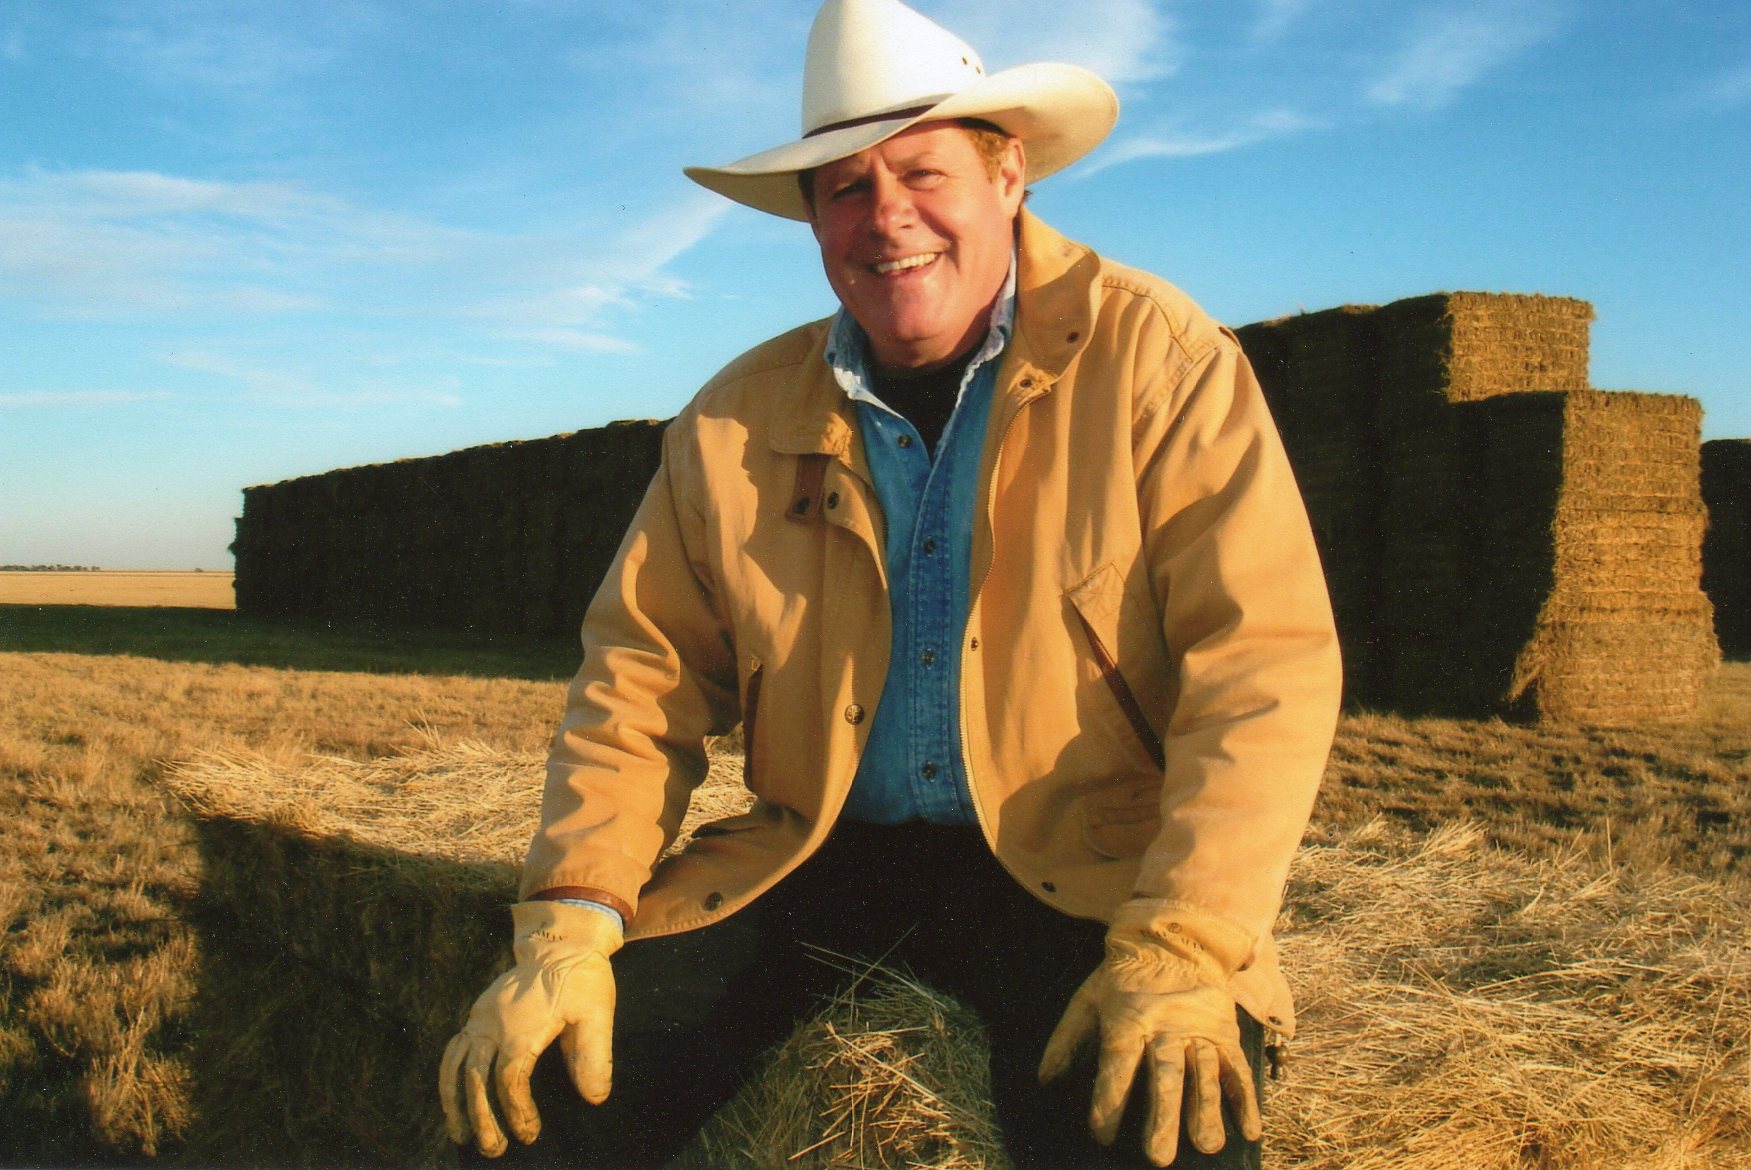 Ben McCain on the farm in Texas.